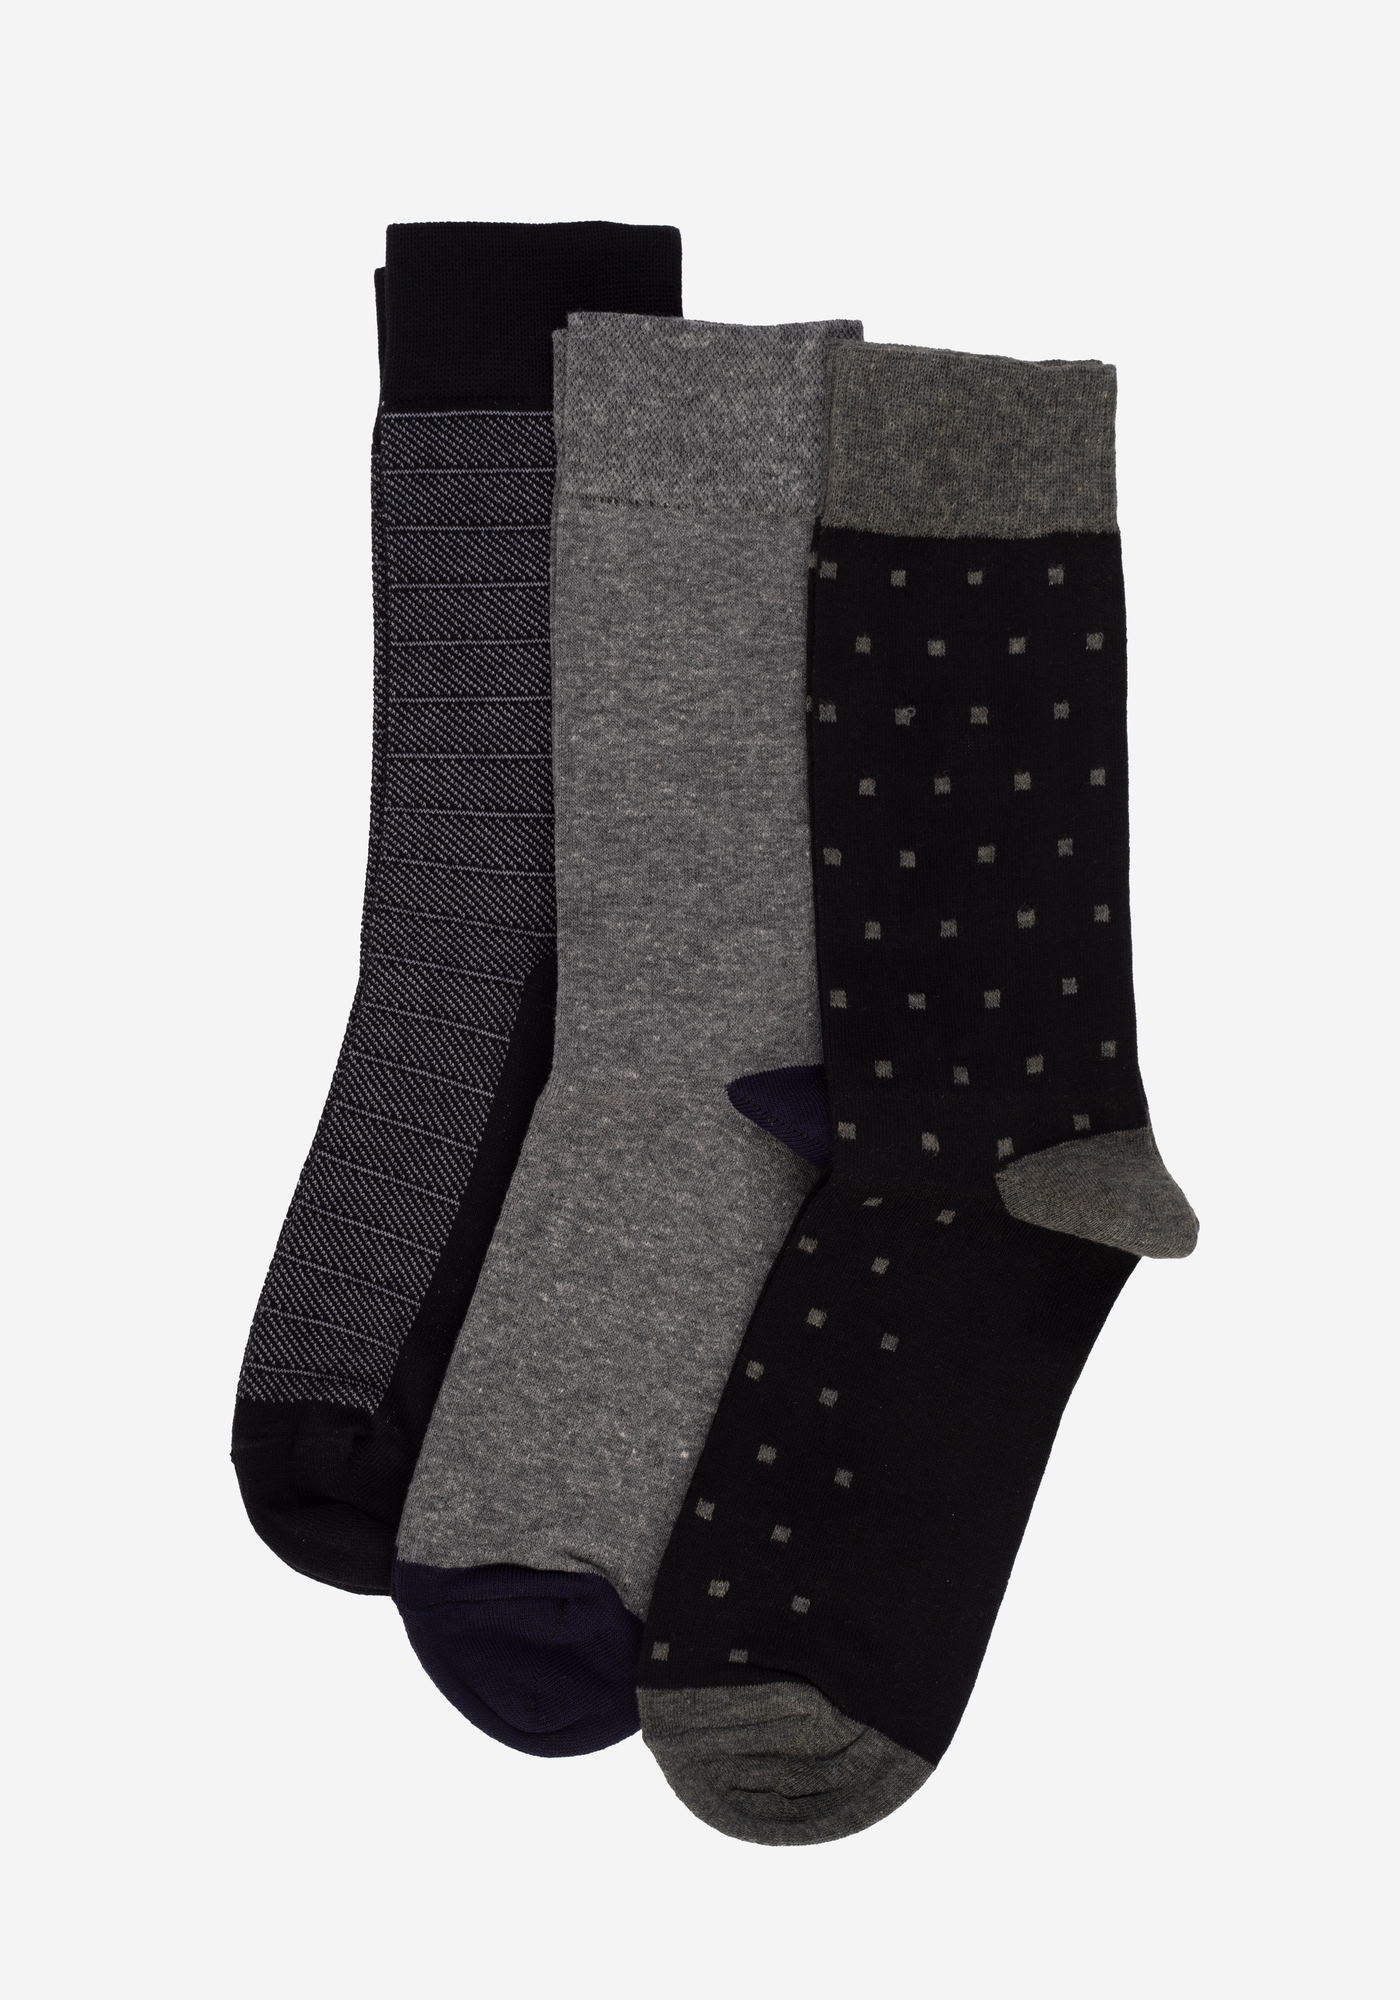 P3*1-910-2 / 3 Long Socks Pack